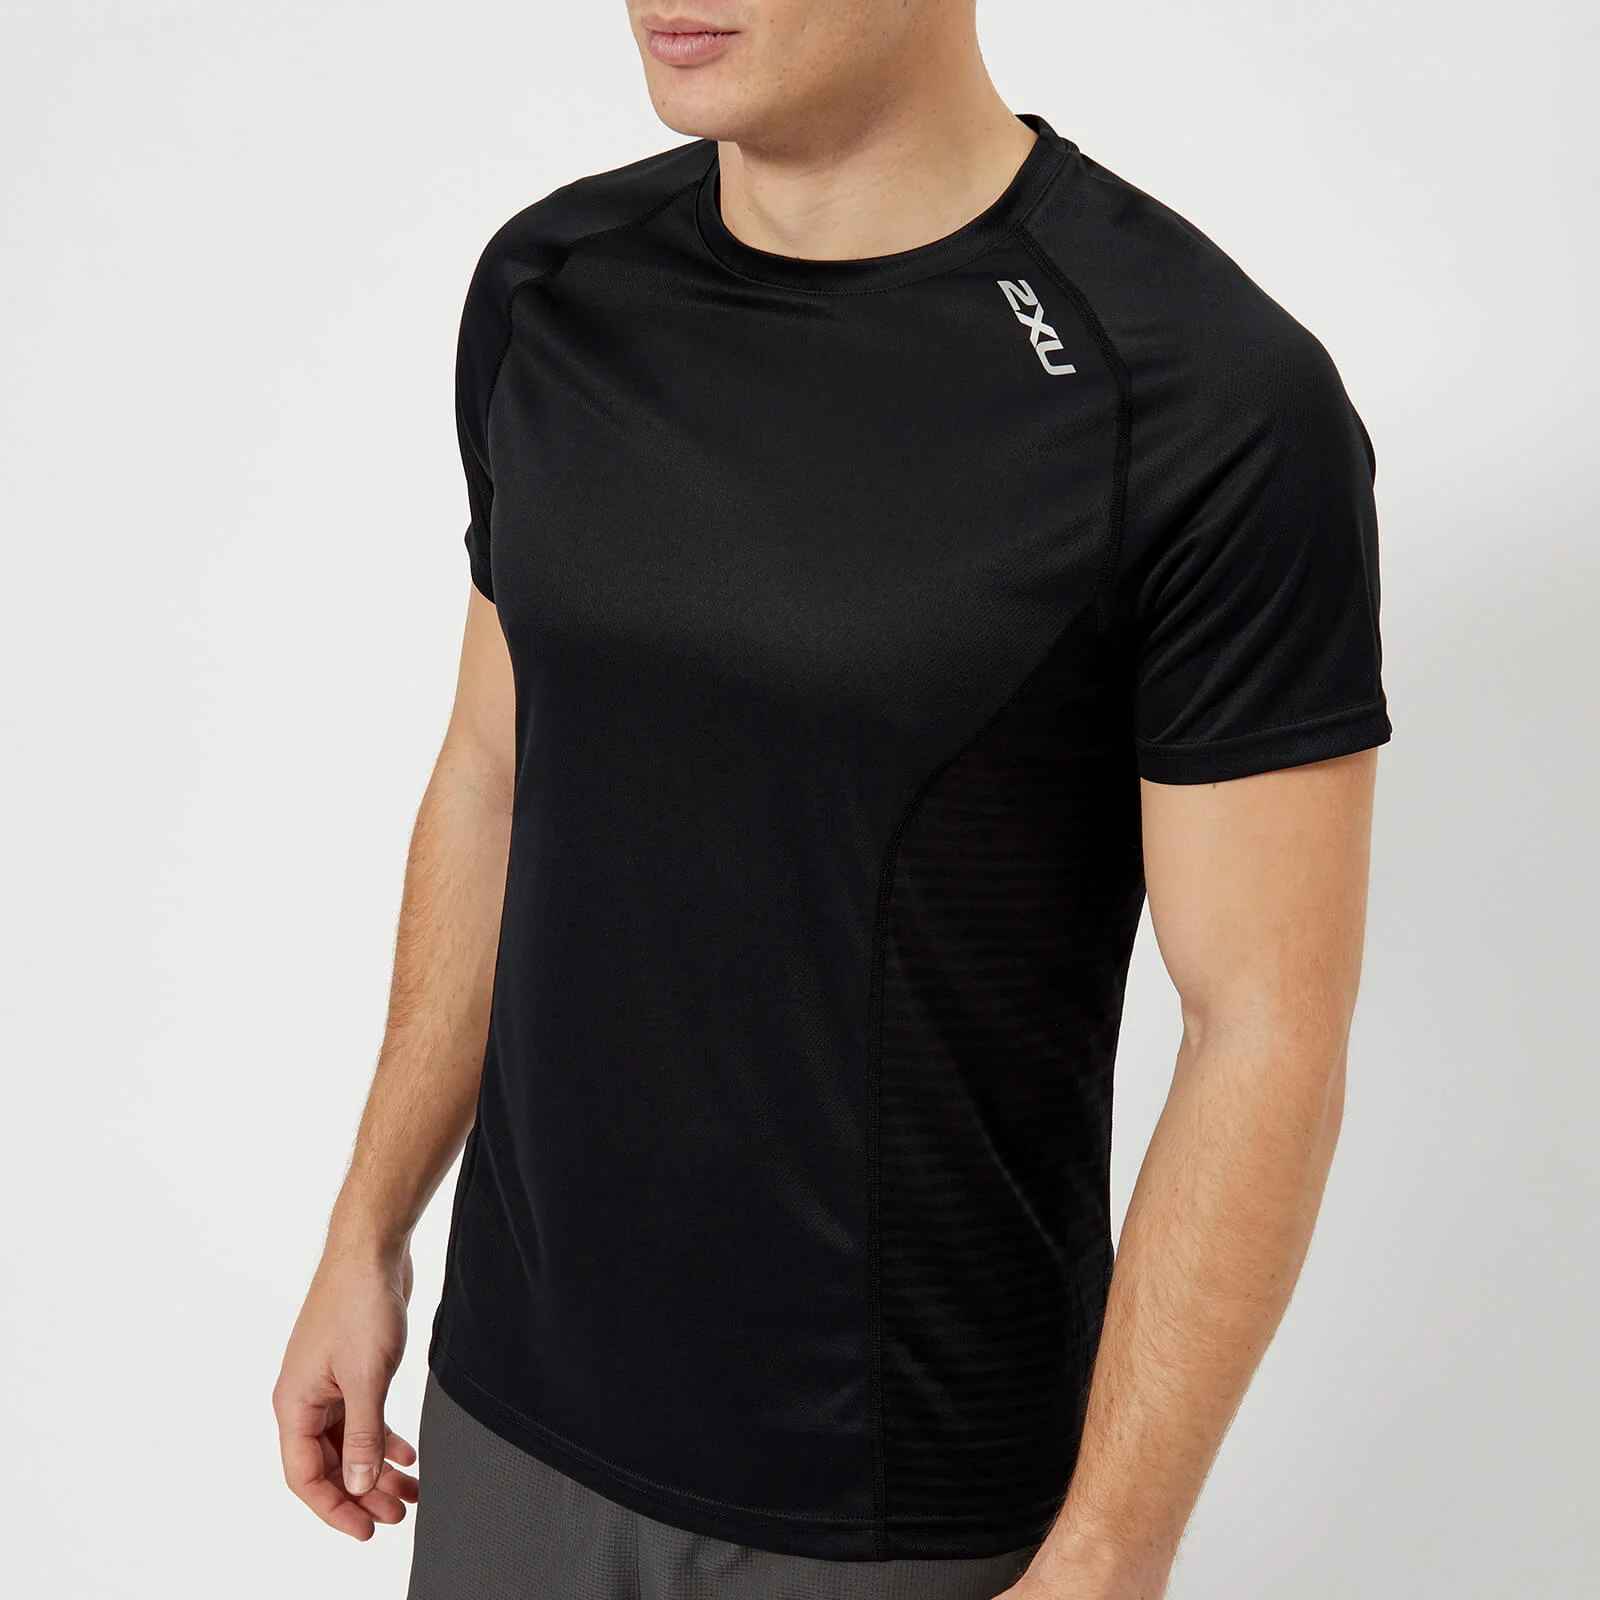 2XU Men's Xvent Short Sleeve Top - Black Image 1